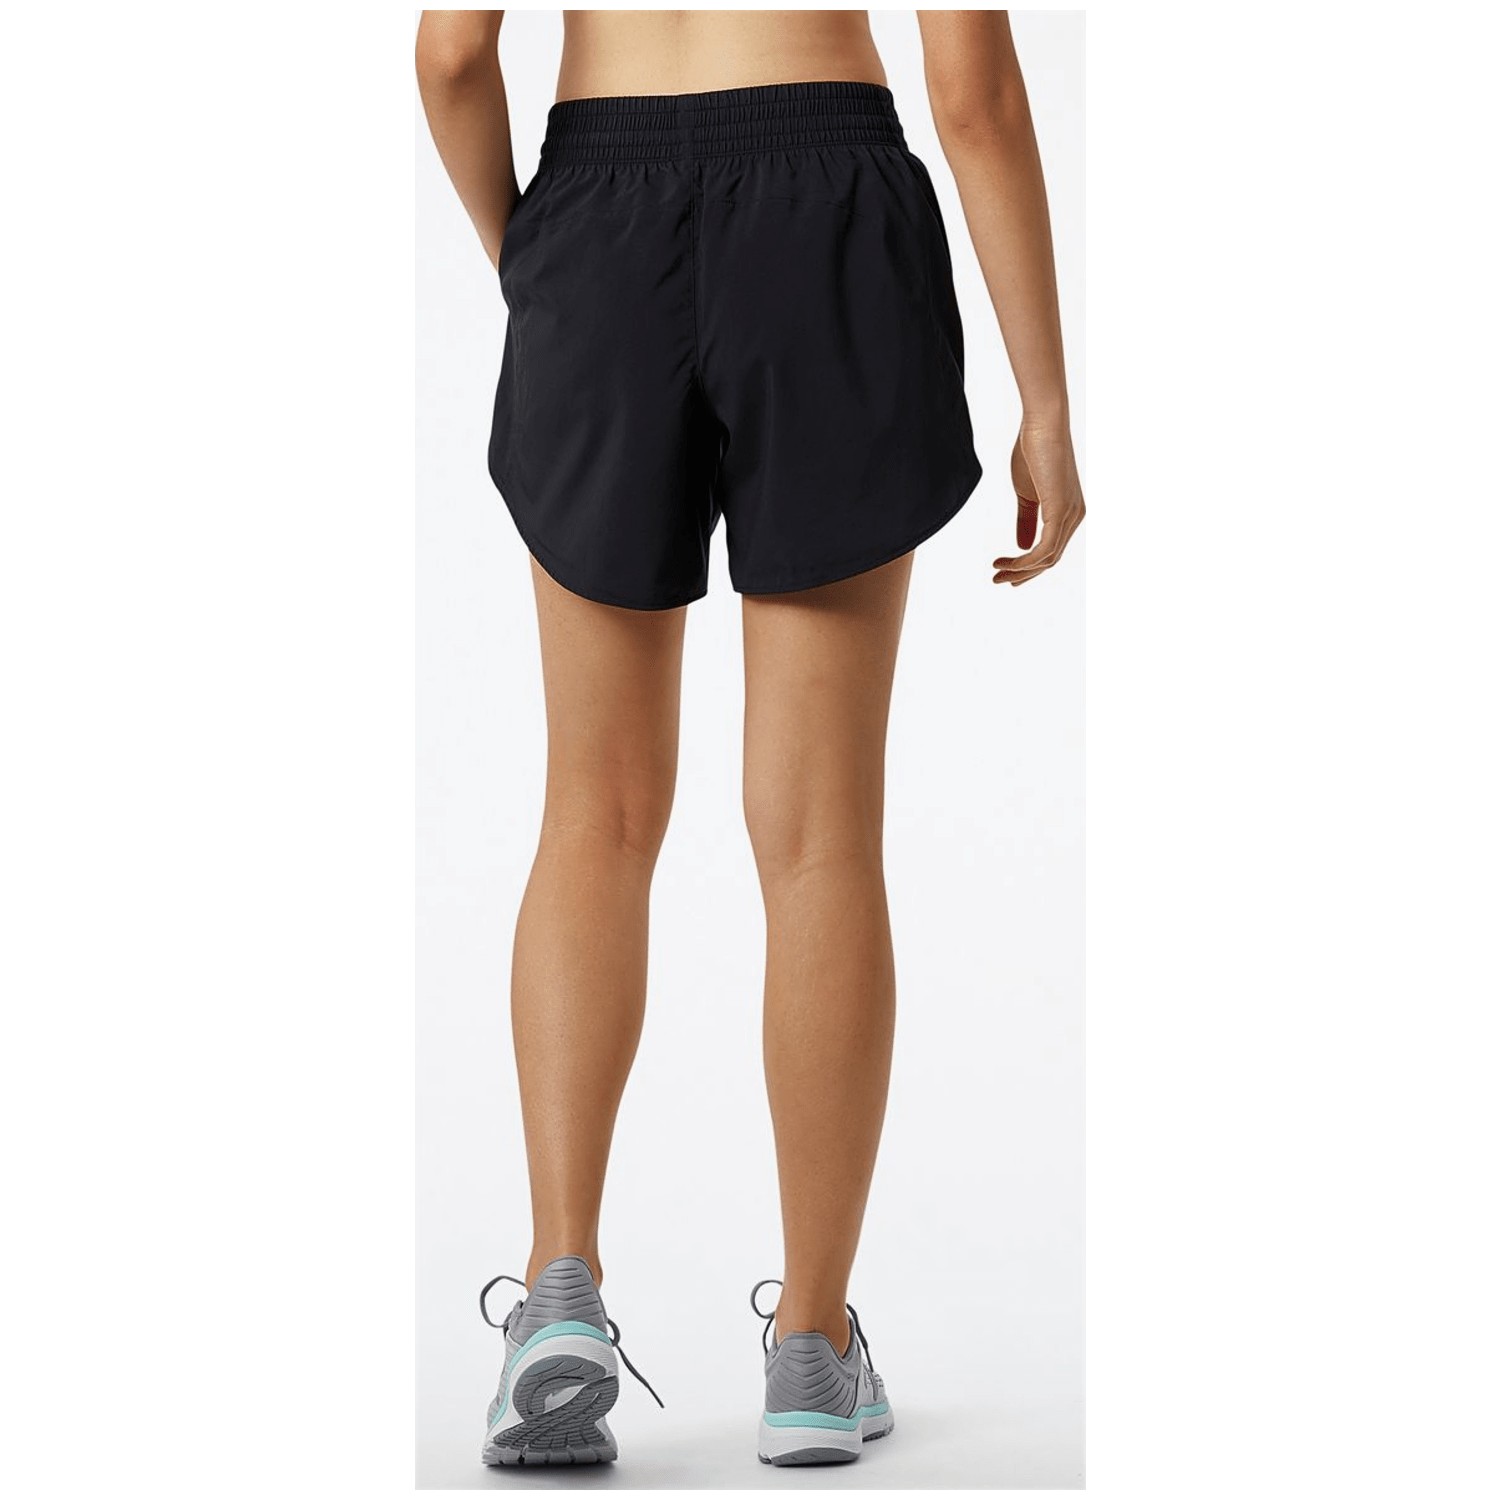 New Balance Accelerate 5 inch Short Damen Shorts